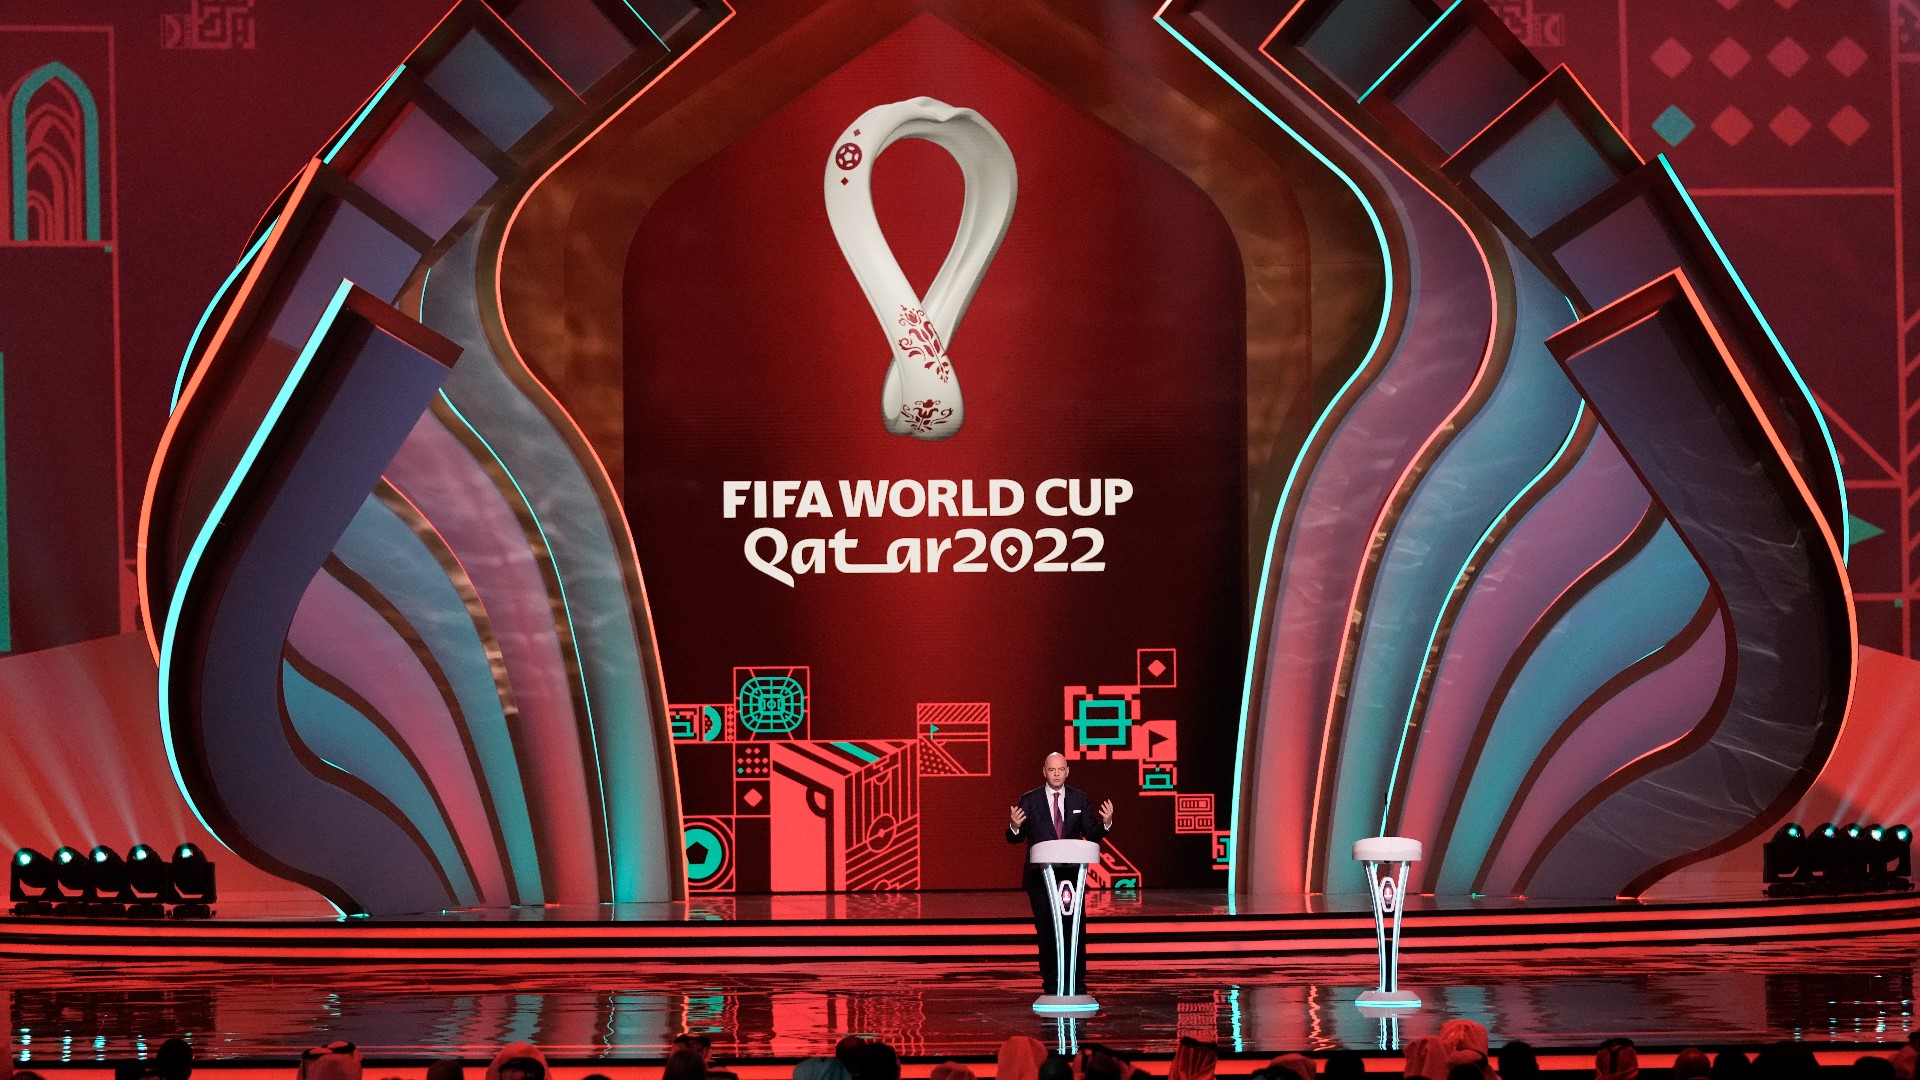 El Mundial de Qatar 2022 arrancará en el mes de noviembre y México se ubica en el Grupo C. Sus rivales serán Argentina, Arabia Saudita y Polonia.